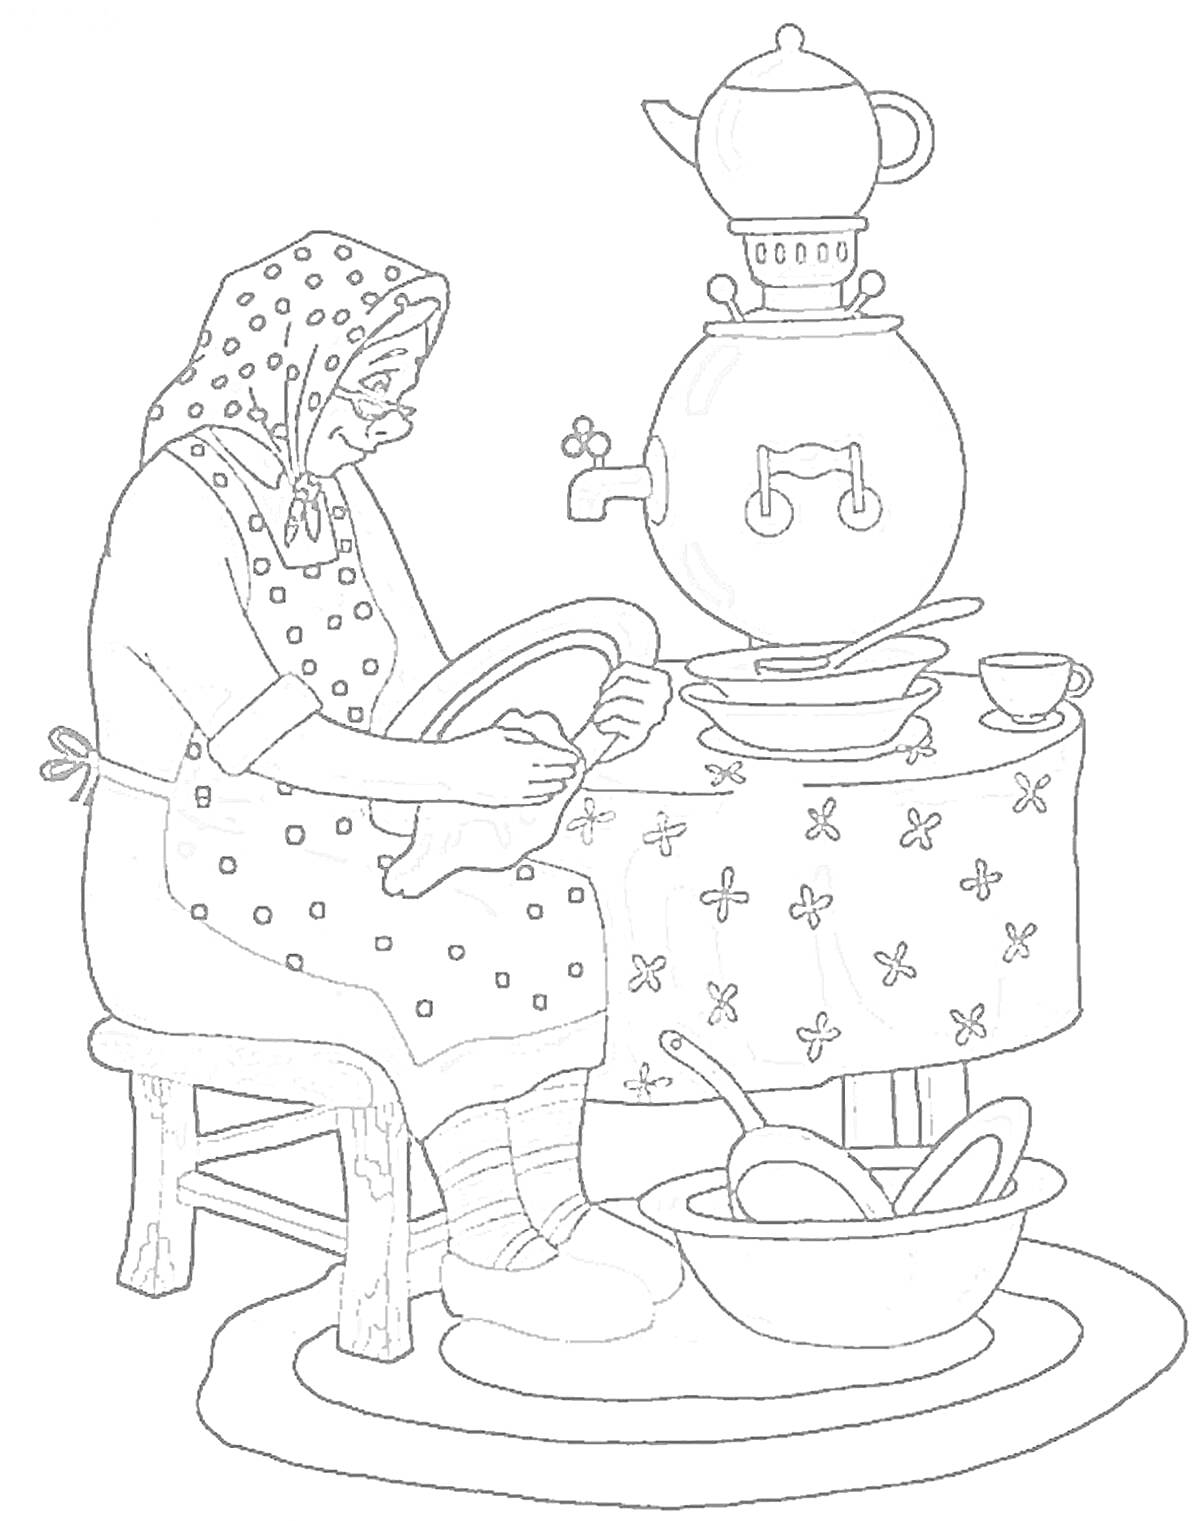 Раскраска Бабушка моет посуду, кипящий самовар, тарелки и чашки на столе, таз с ложками на полу